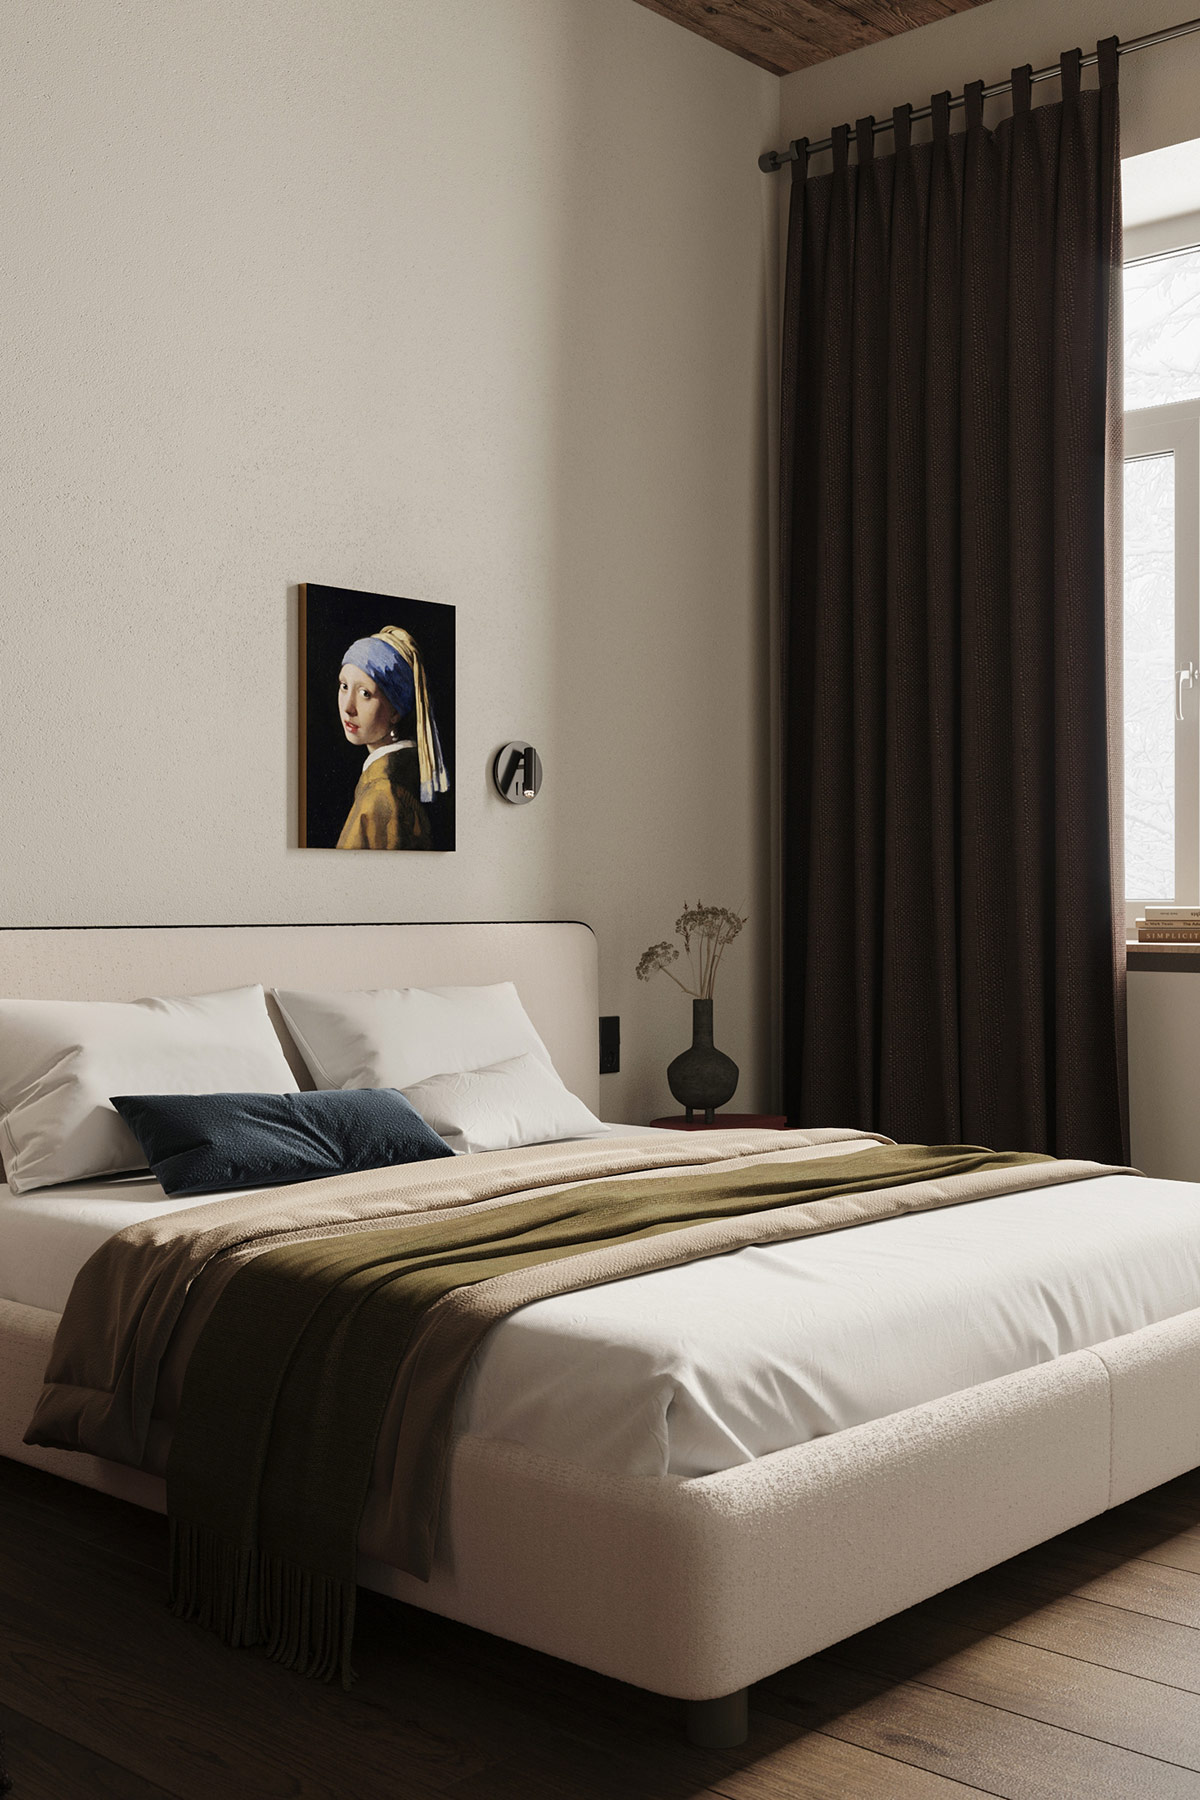 Bức tranh vẽ 'Thiếu nữ đeo hoa tai ngọc trai' trong tác phẩm nghệ thuật cùng tên (tiểu thuyết và điện ảnh) tạo nên vẻ đẹp tinh tế cho bức tường phòng ngủ.